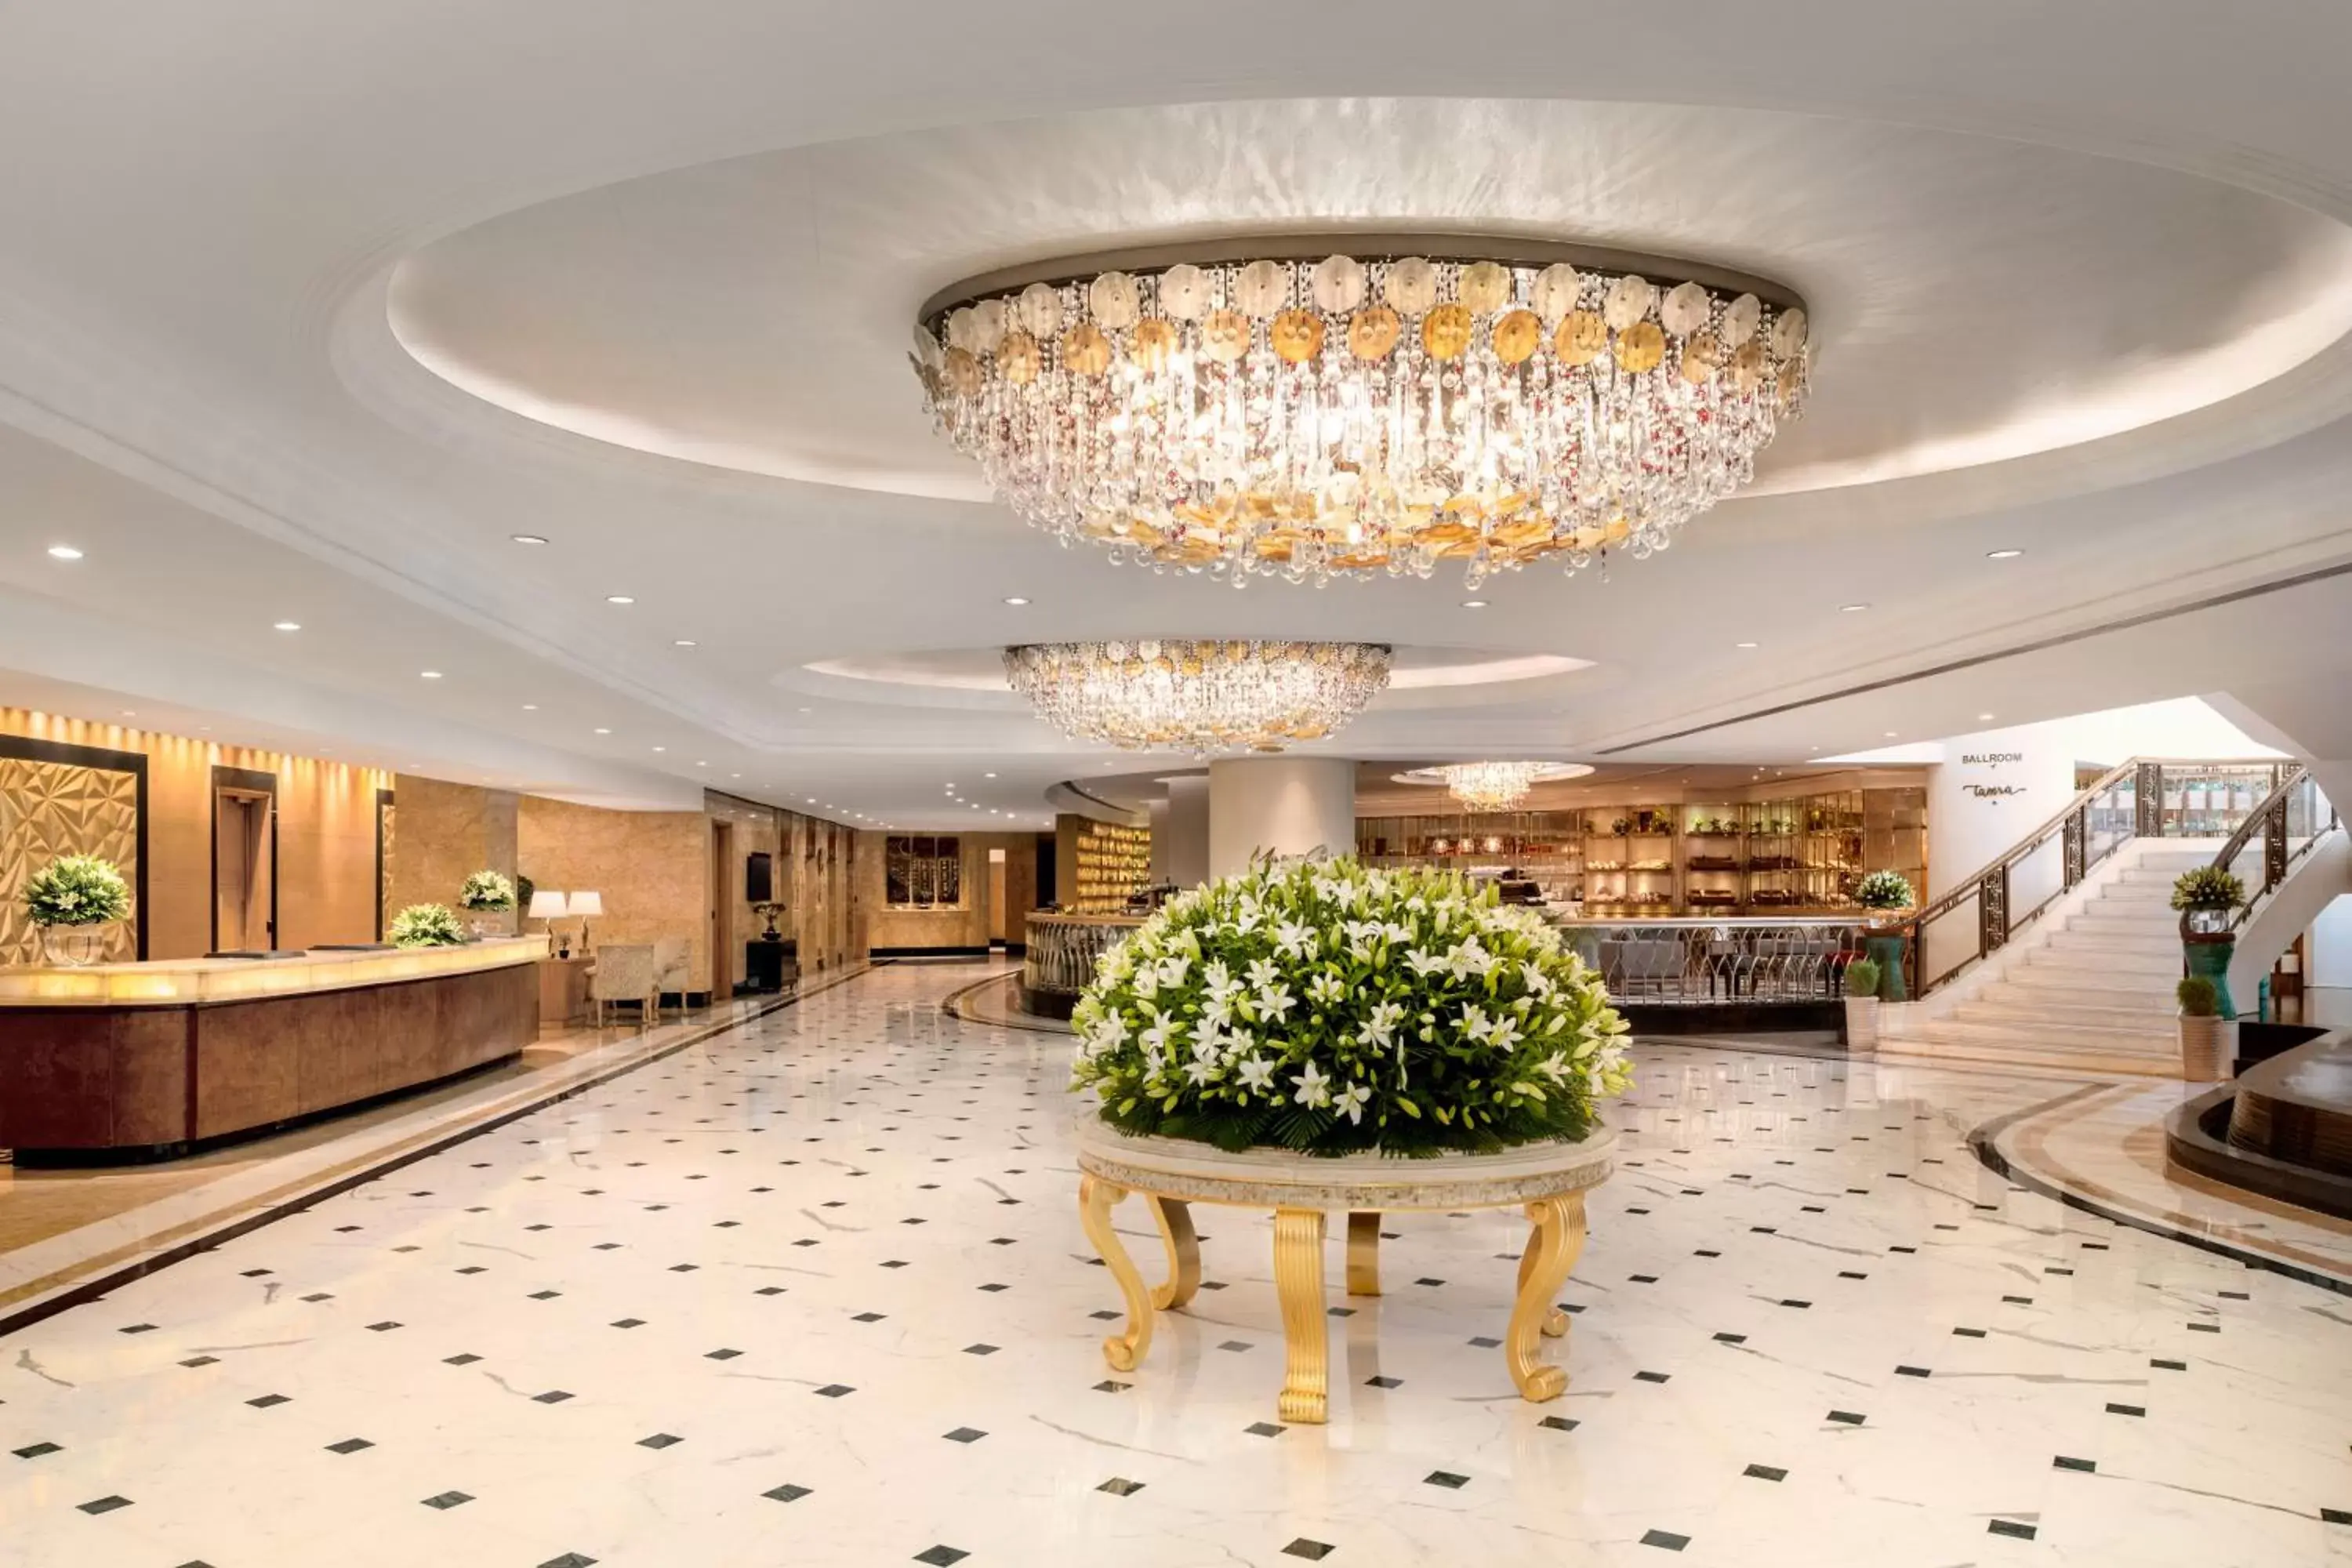 Lobby or reception, Lobby/Reception in Shangri-La Eros New Delhi